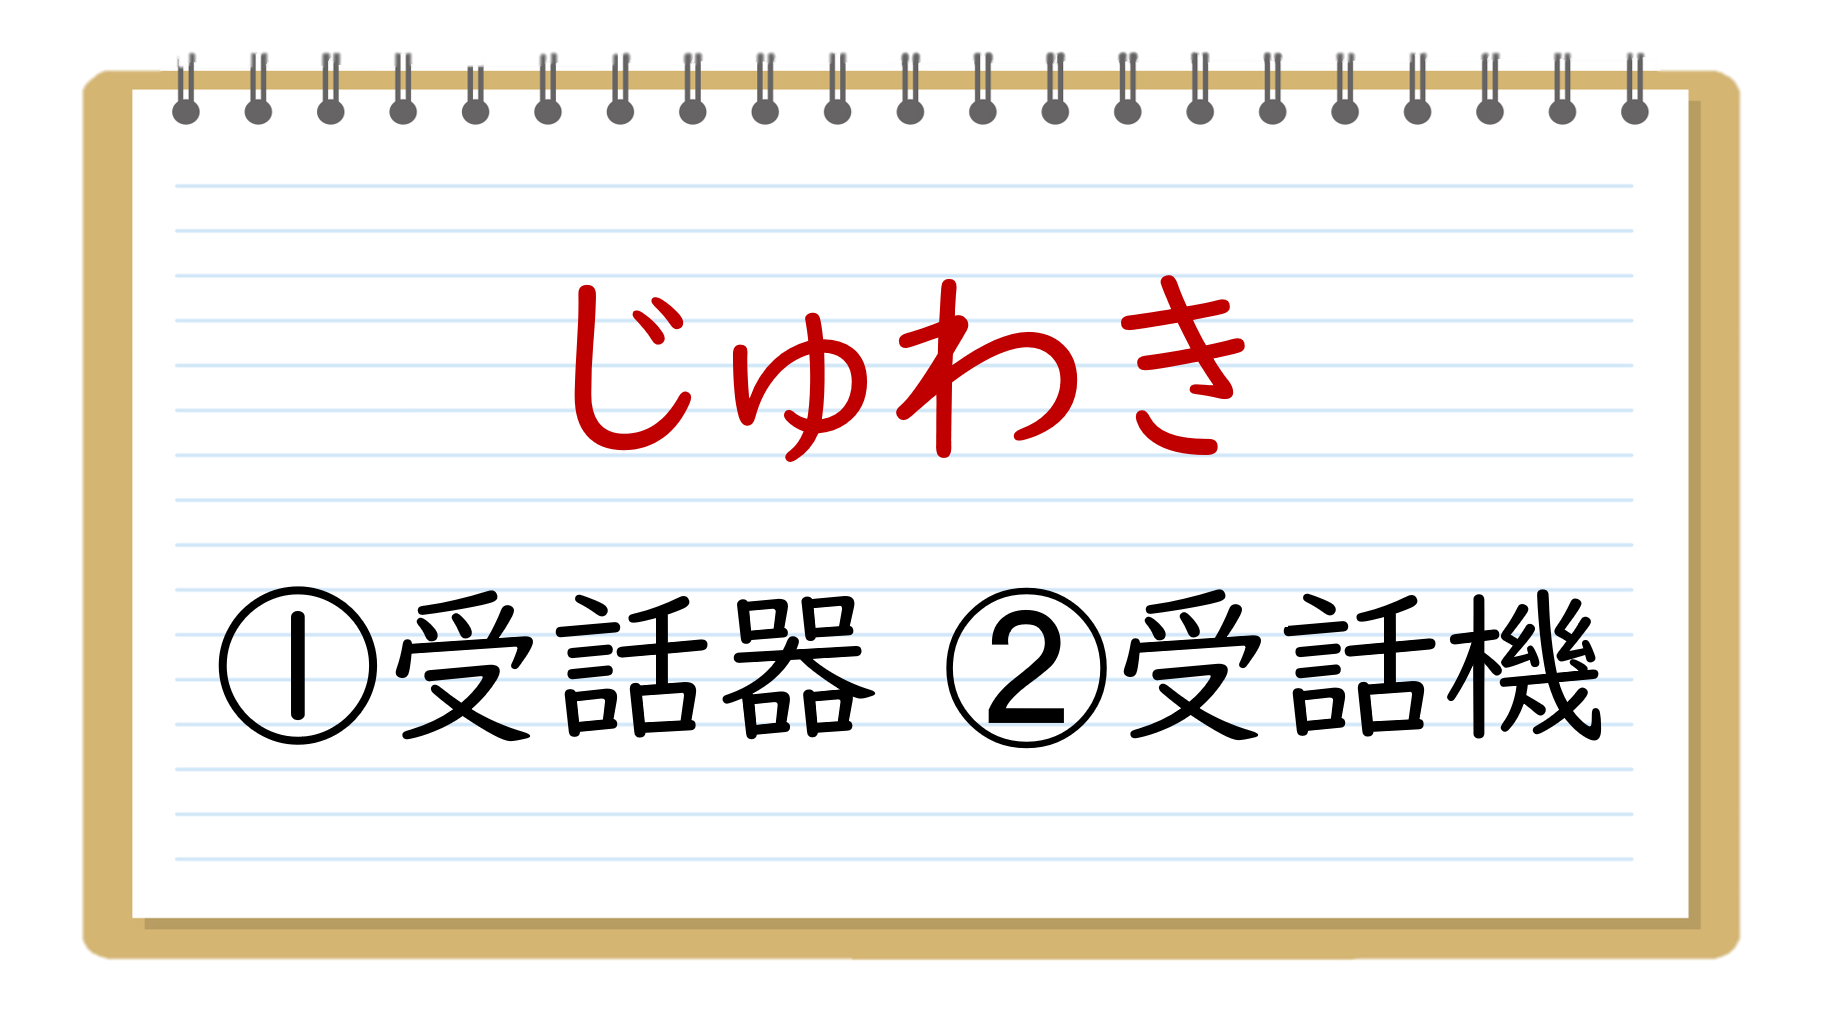 紛らわしい漢字クイズ 全問 学生向け 間違いやすい2択問題を紹介 クイズ王国